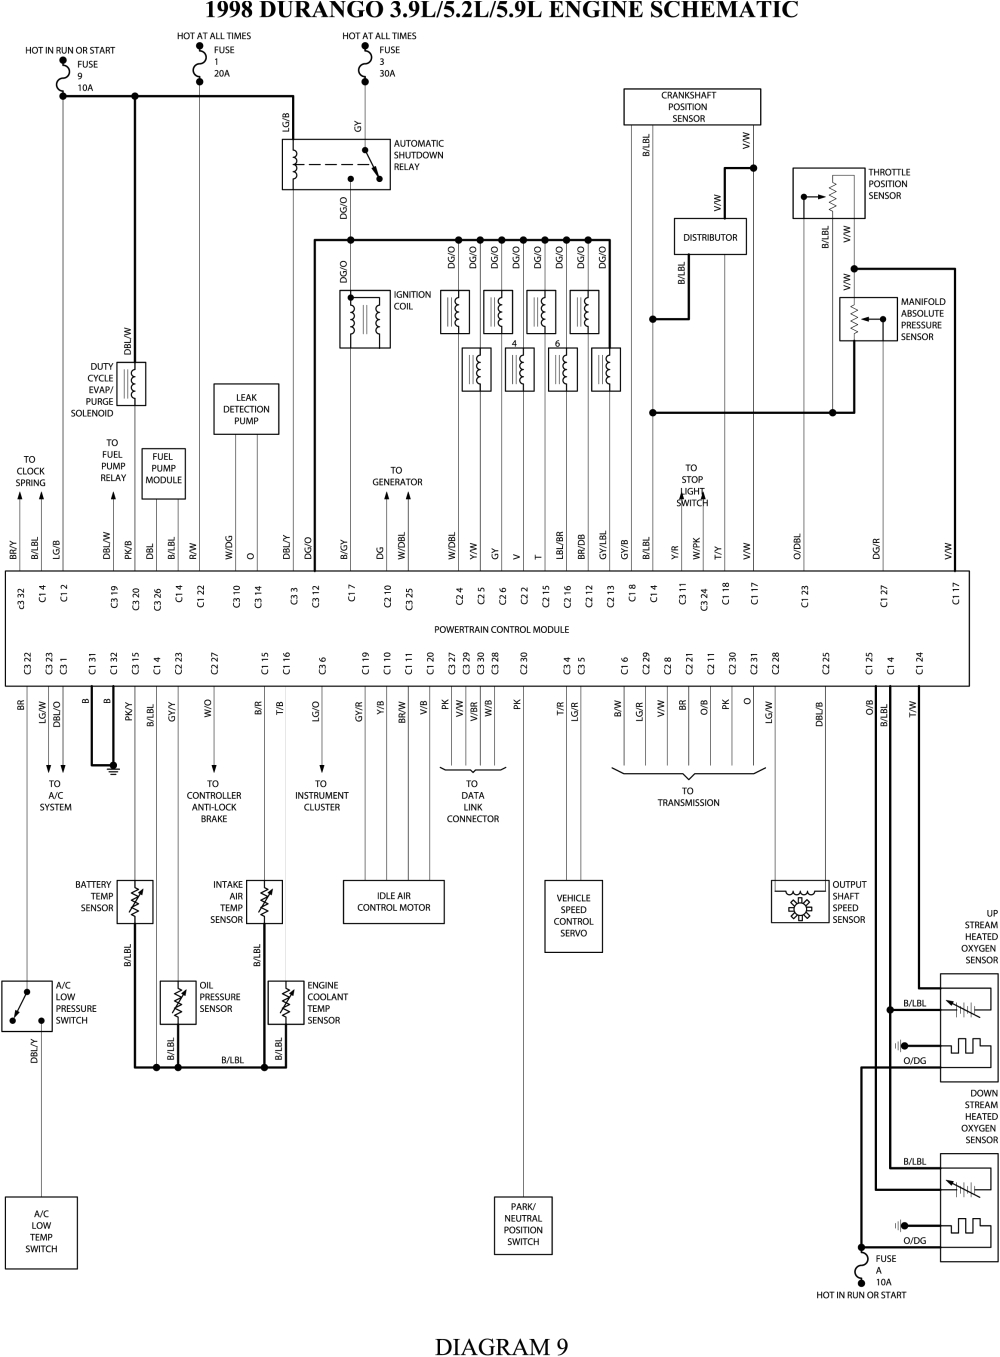 2001 dakota wiring diagram wiring diagram page headlight wiring diagram for 2001 dakota source 1998 dodge dakota overdrive switch